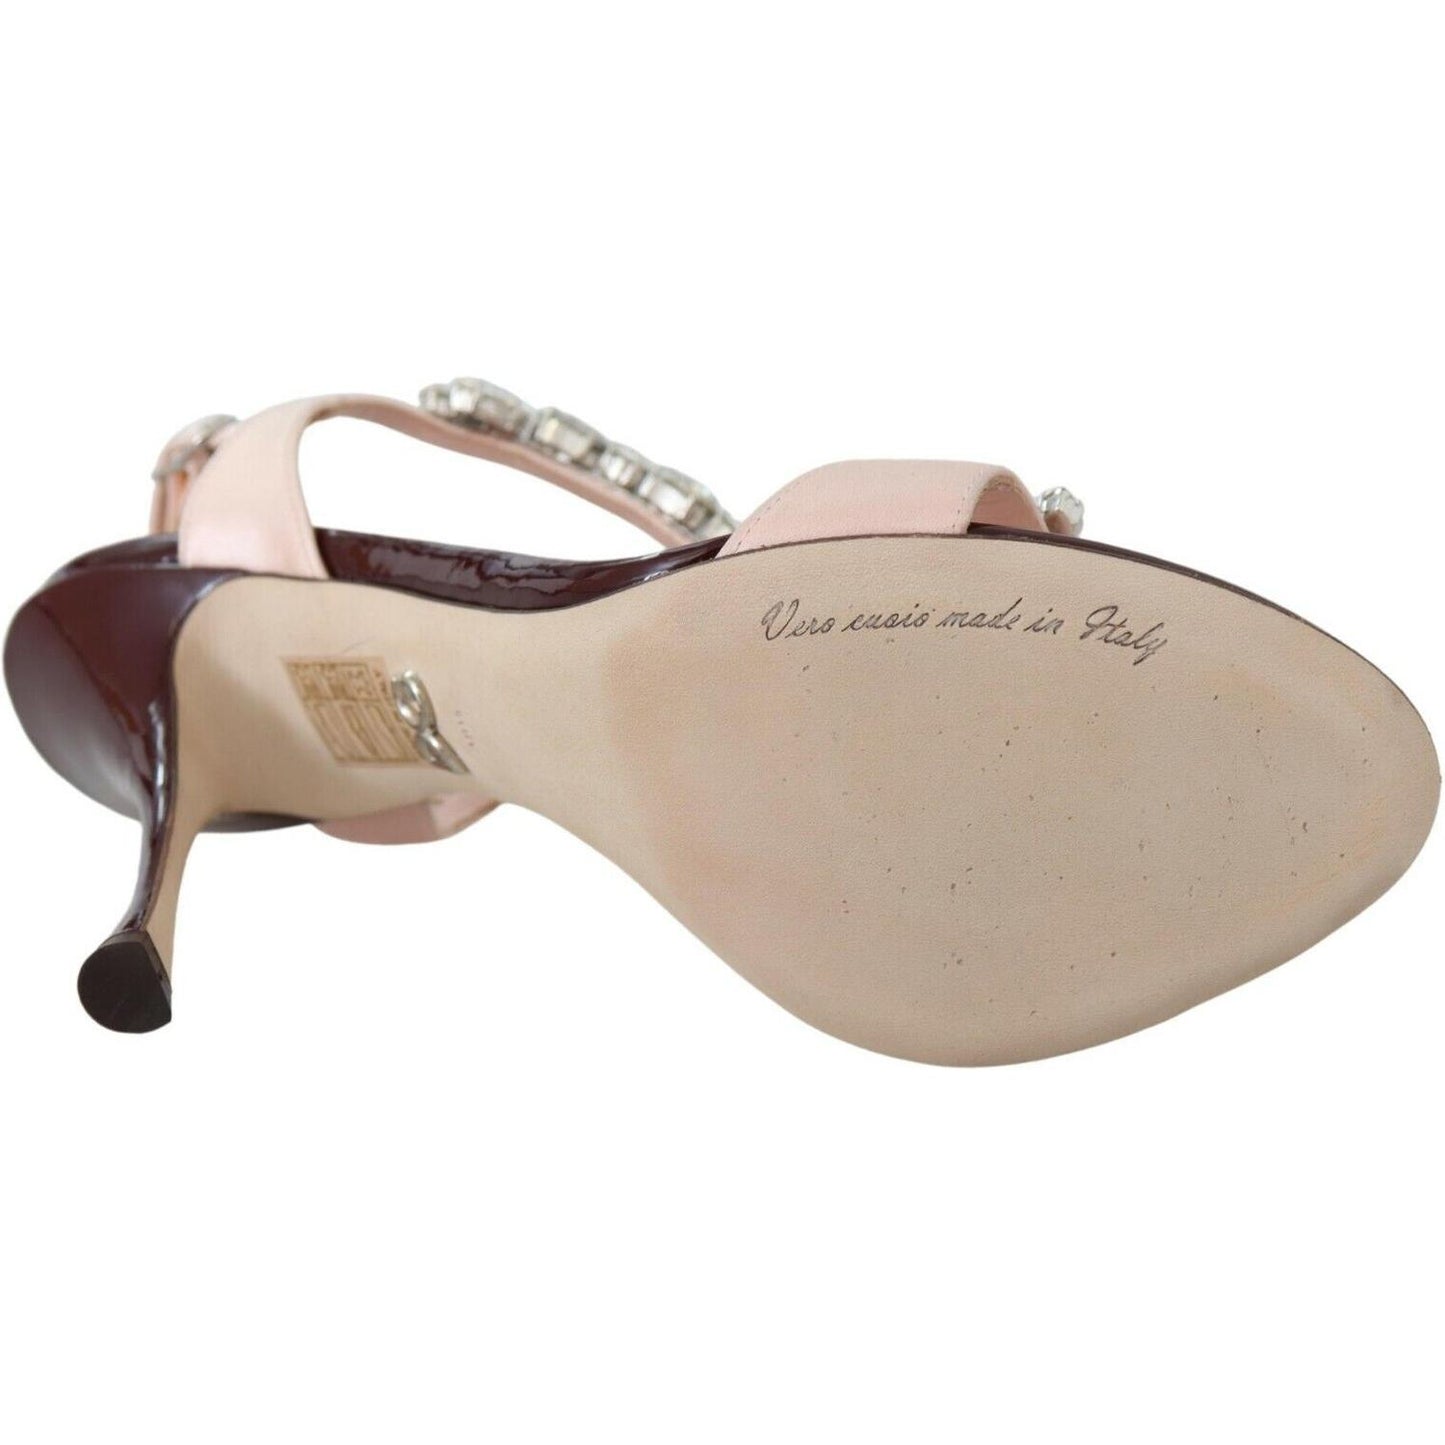 Dolce & Gabbana Crystal-Embellished Stiletto Sandals pink-crystals-heels-keira-sandals